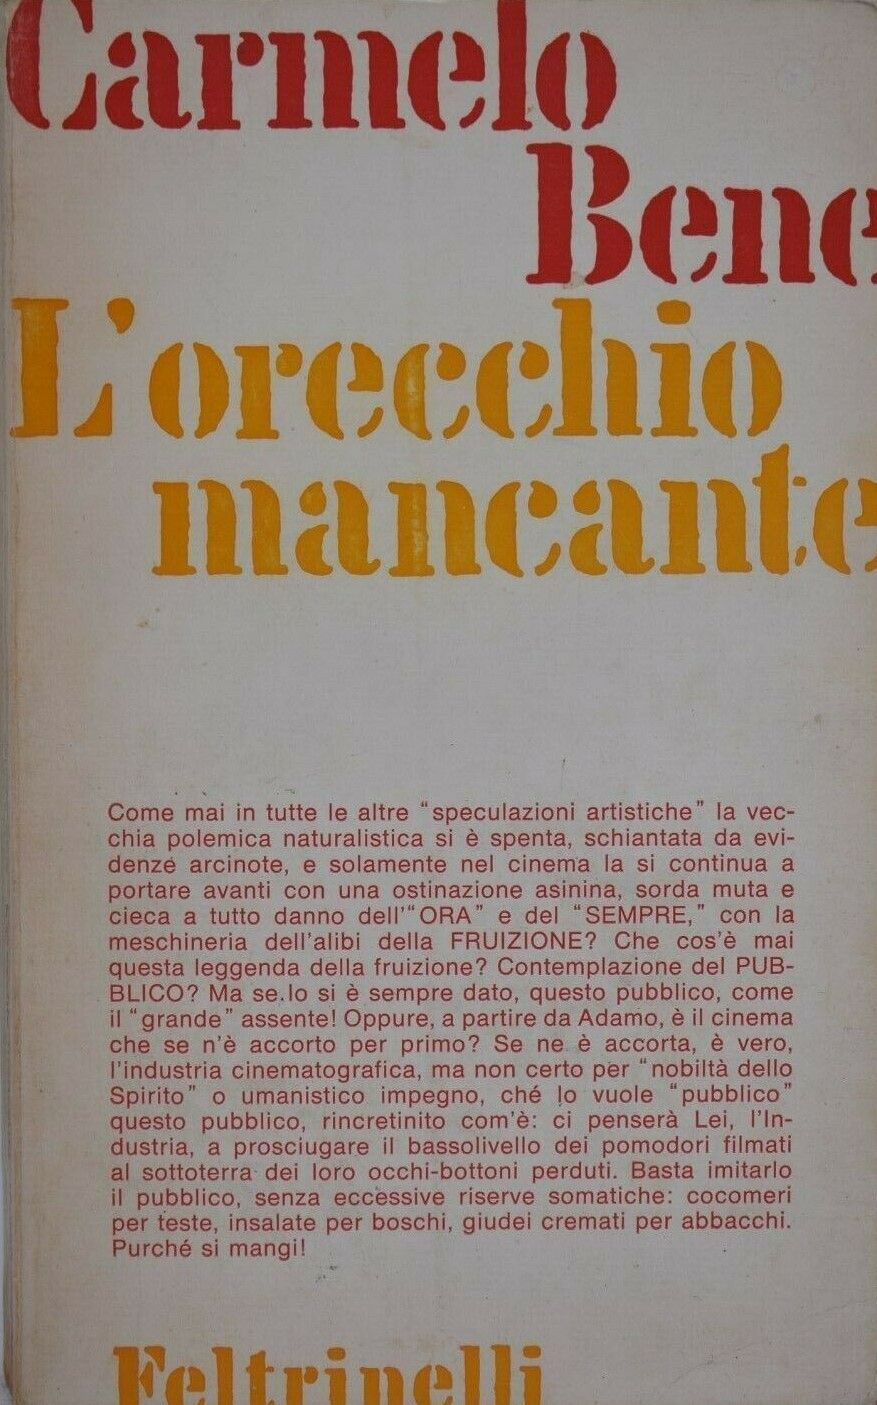 Segnali di vita dal pianeta Carmelo Bene: riappare “L’orecchio mancante” (Feltrinelli, 1970)